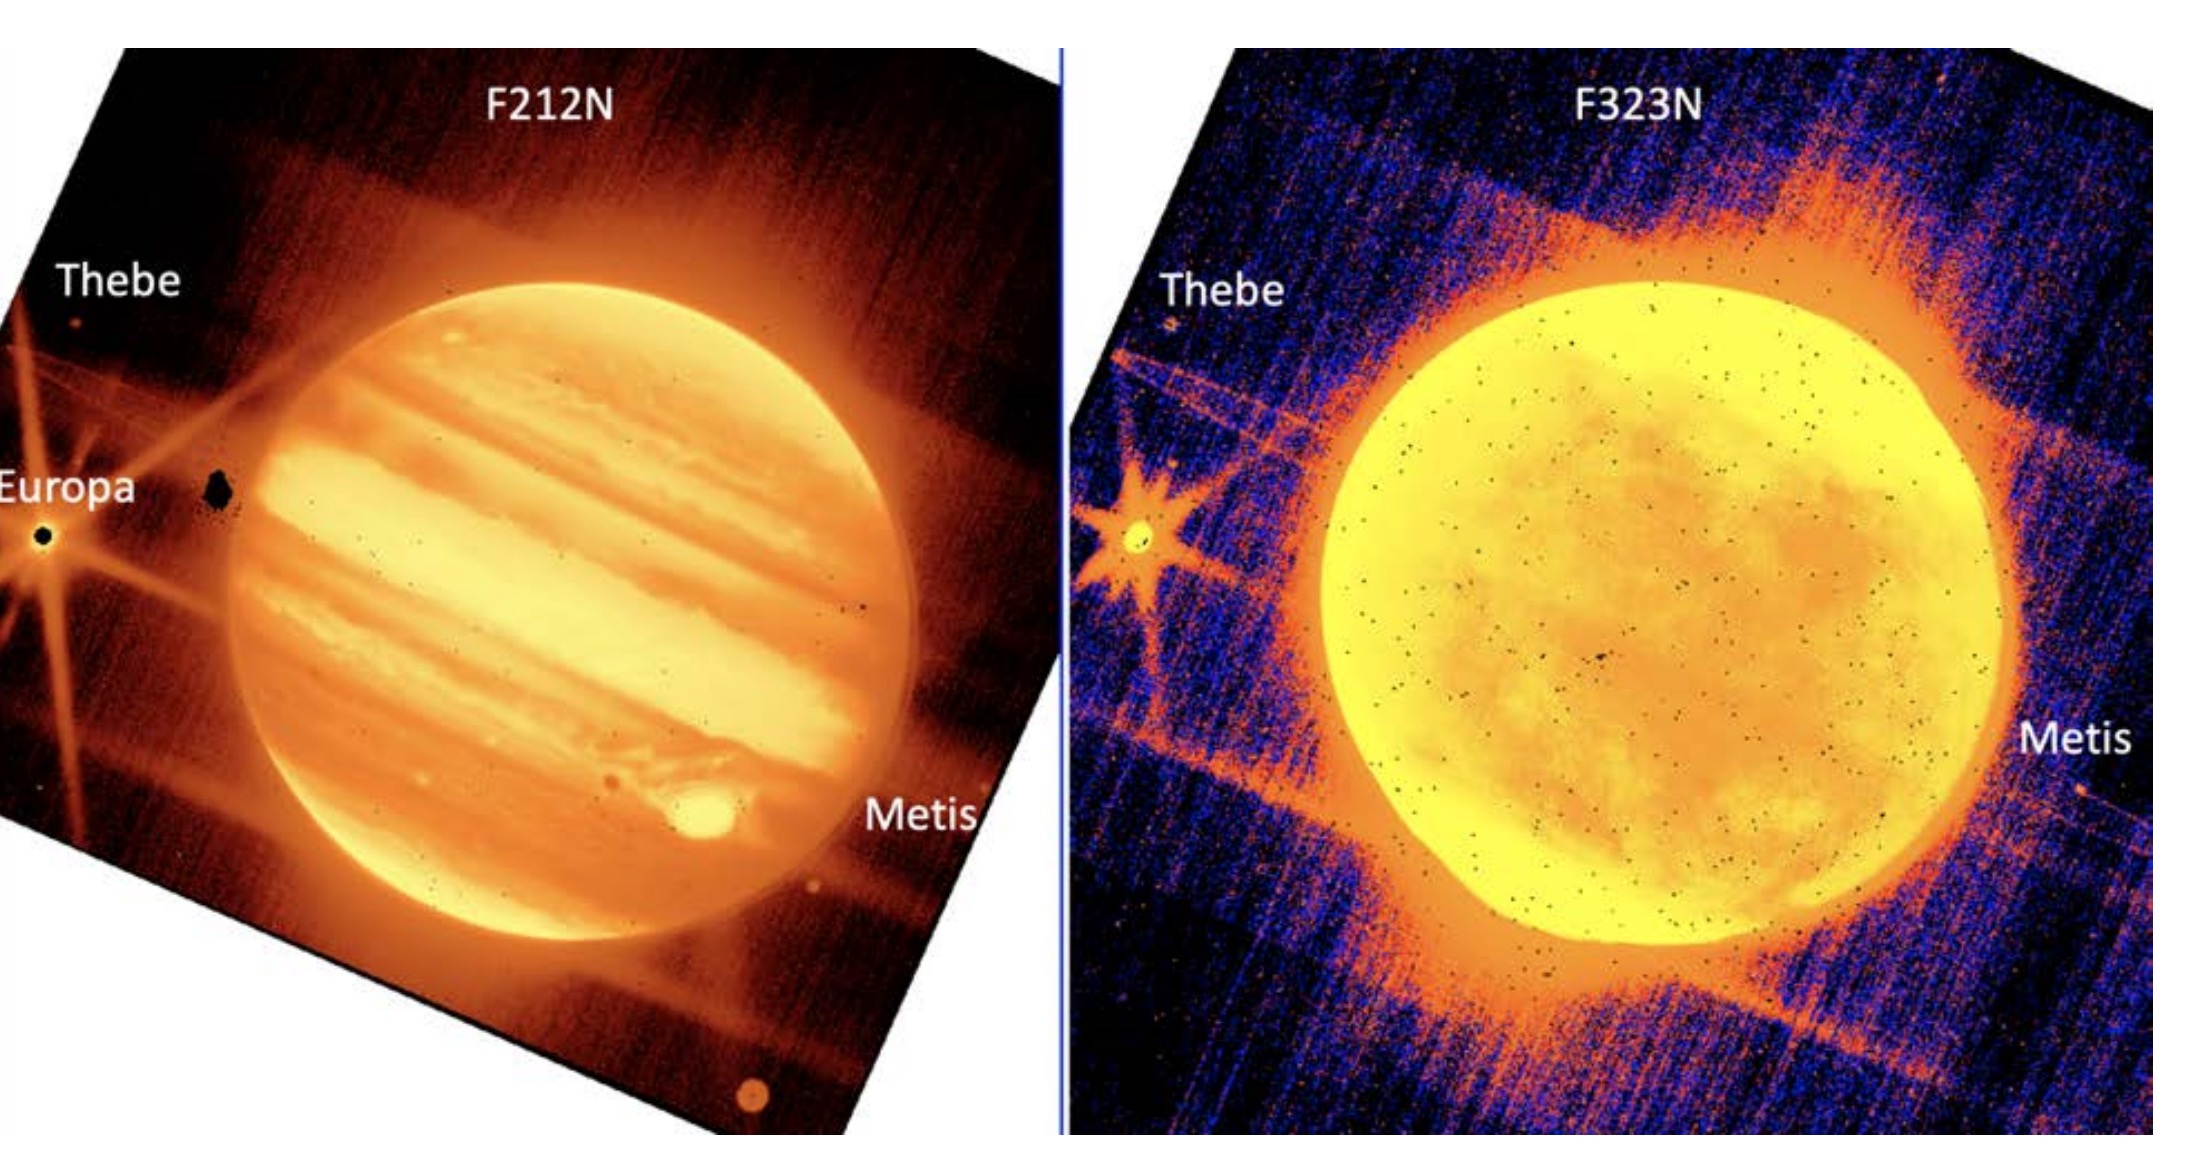 Izquierda: Júpiter y sus lunas Europa, Tebe y Metis se ven a través del filtro NIRCam de 2,12 micras del telescopio espacial James Webb.  Derecha: Júpiter, Europa, Tebas y Metis pueden verse a través del filtro NIRCam de 3,23 micras.